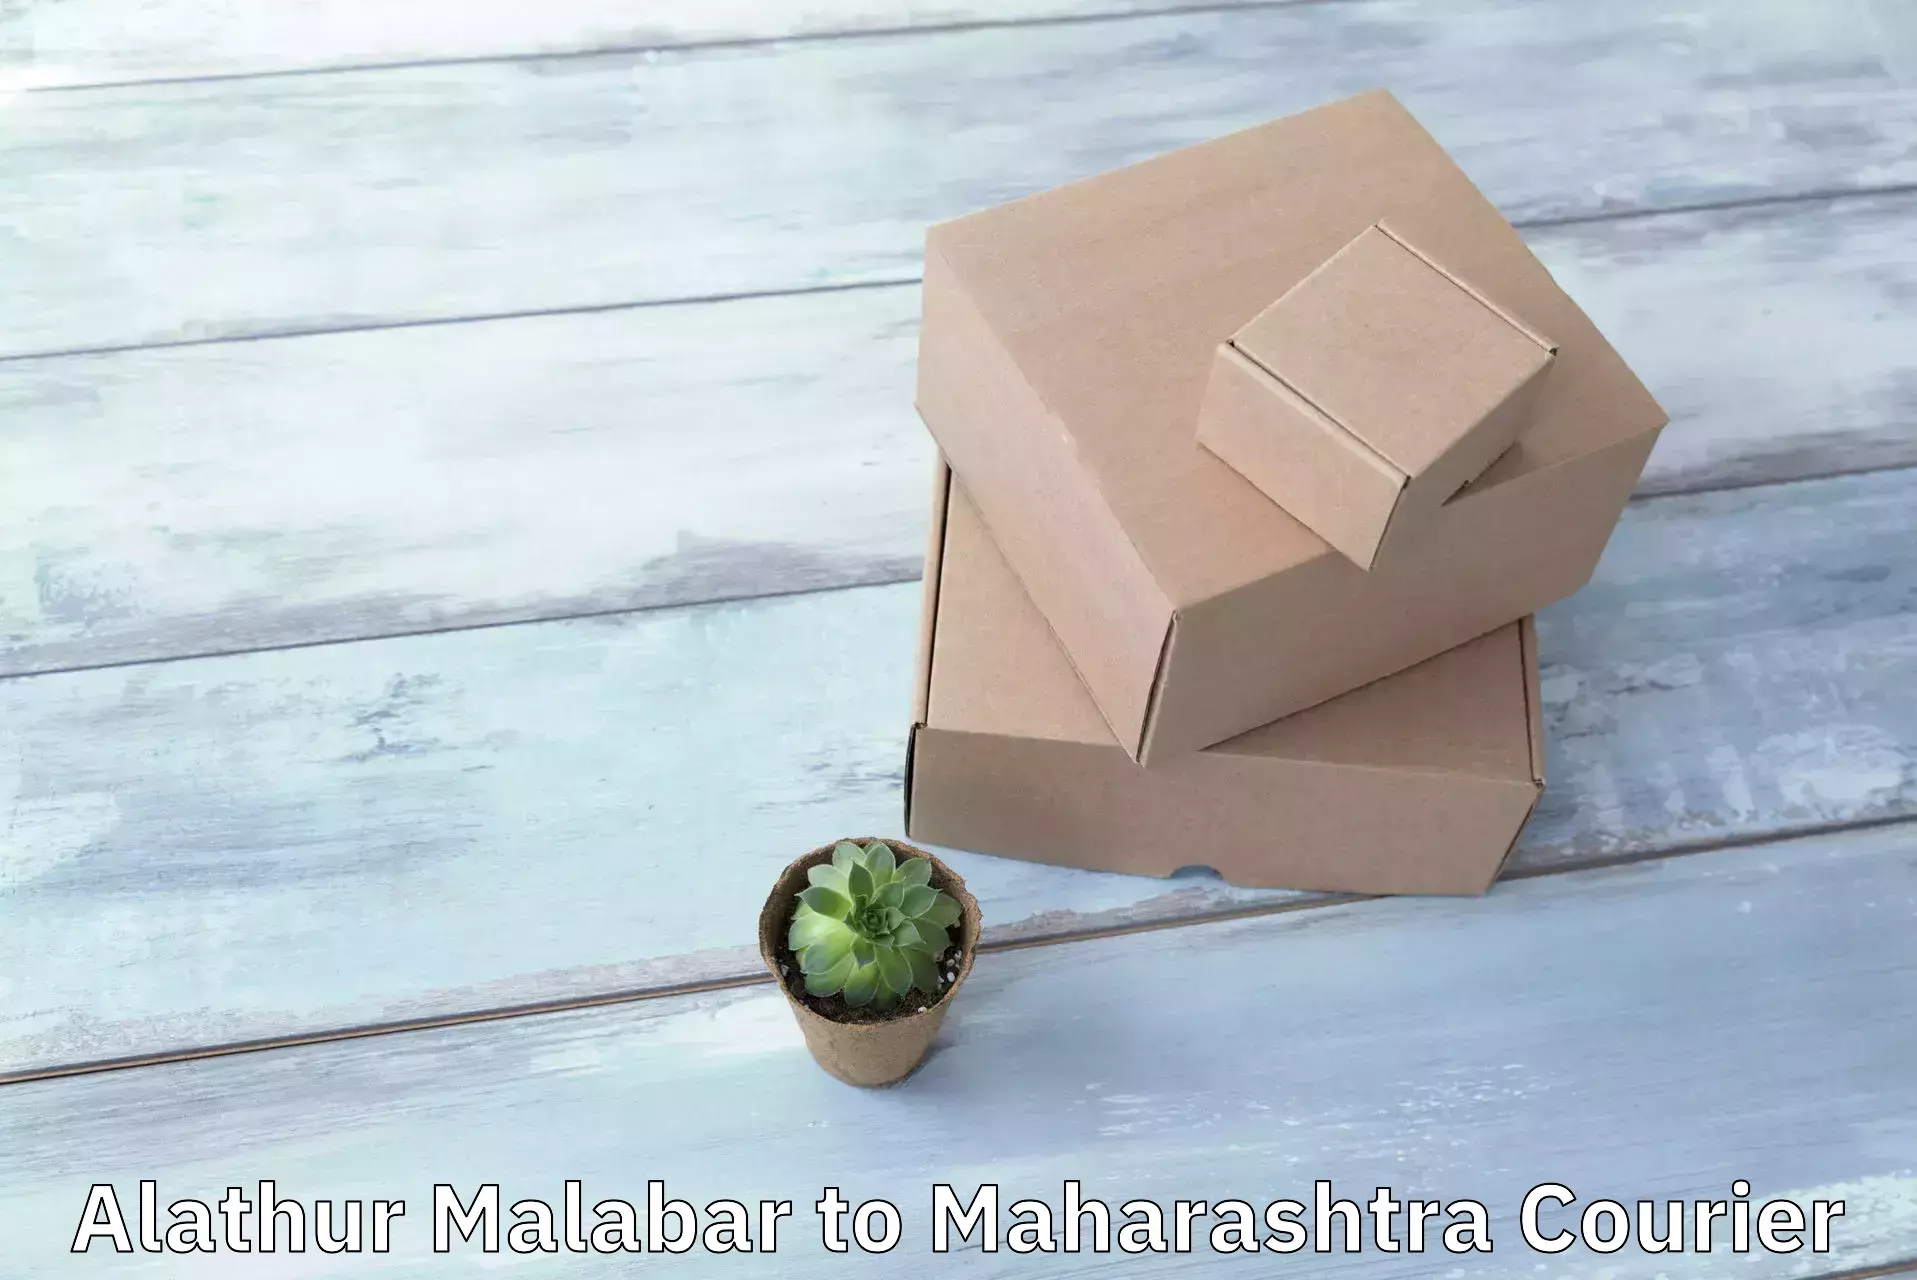 Special handling courier Alathur Malabar to Ichalkaranji